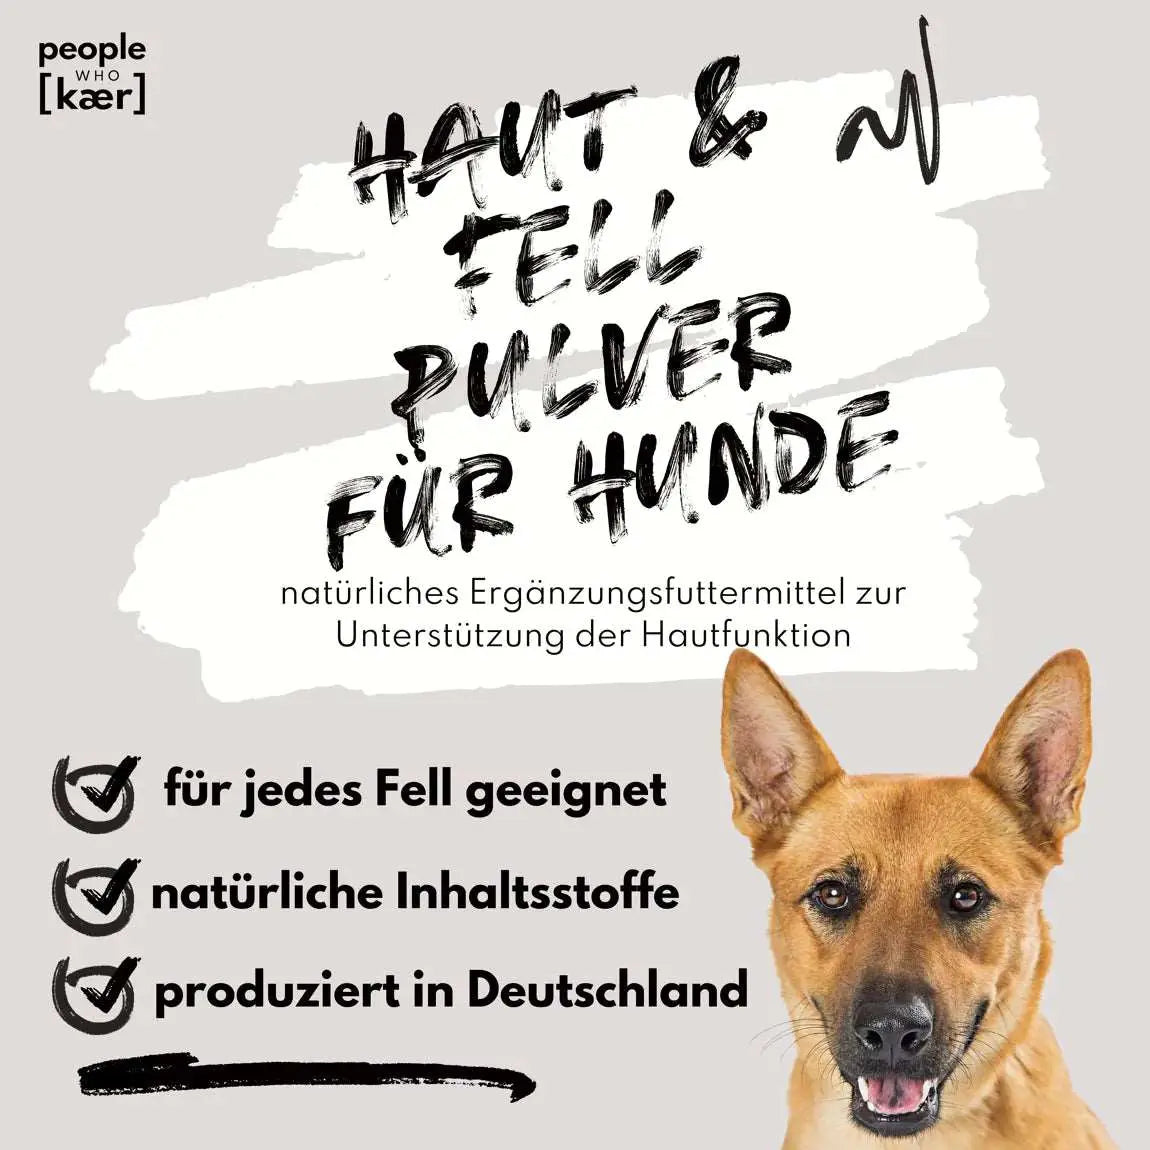 Haut & Fell Pulver für Hunde - mit Biotin, Kurkuma, Hyaluron & Bierhefe - people who kaer - Puplando